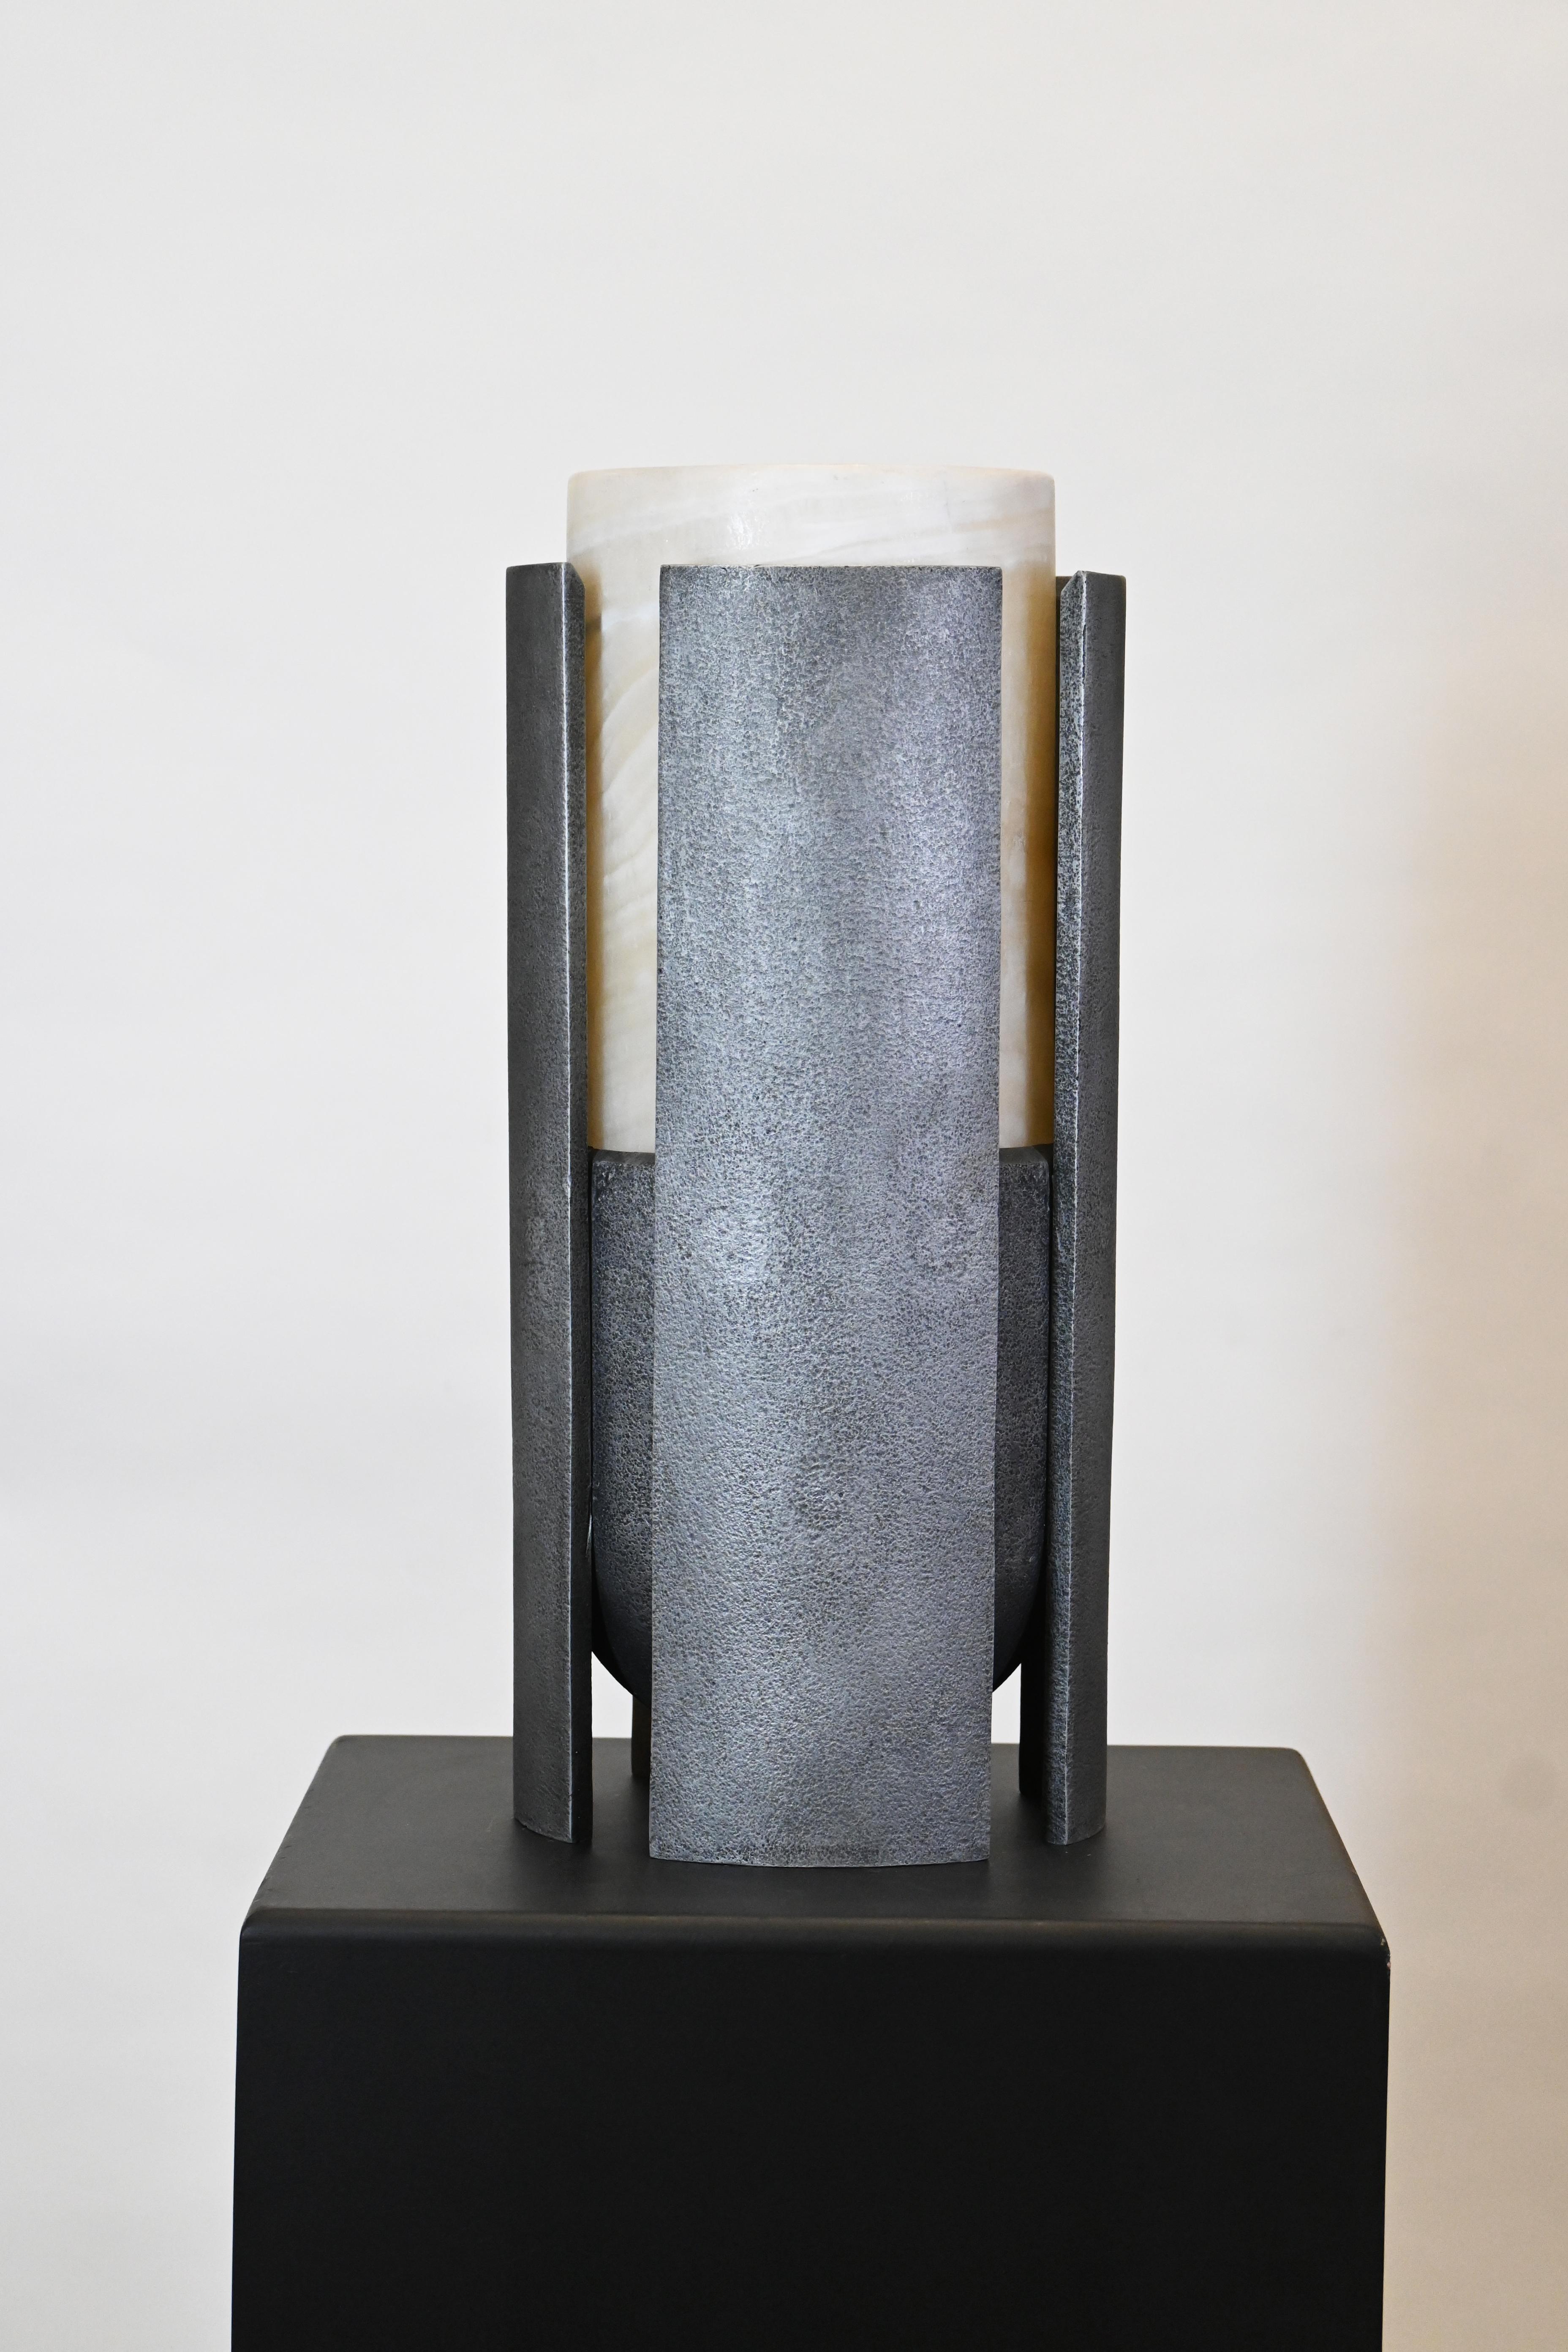 Runa-Serie - Graphit und Obsidian  Skulpturale Vase 
Von Deceres Studio
San Luis Onyx und gegossenes Graphitaluminium
Obsidian und gegossenes schwarzes Aluminium
Auflage von 7 
22T x 50H cm 
8.6D x 19.6H in

Runa ist eine skulpturale Vase, die von